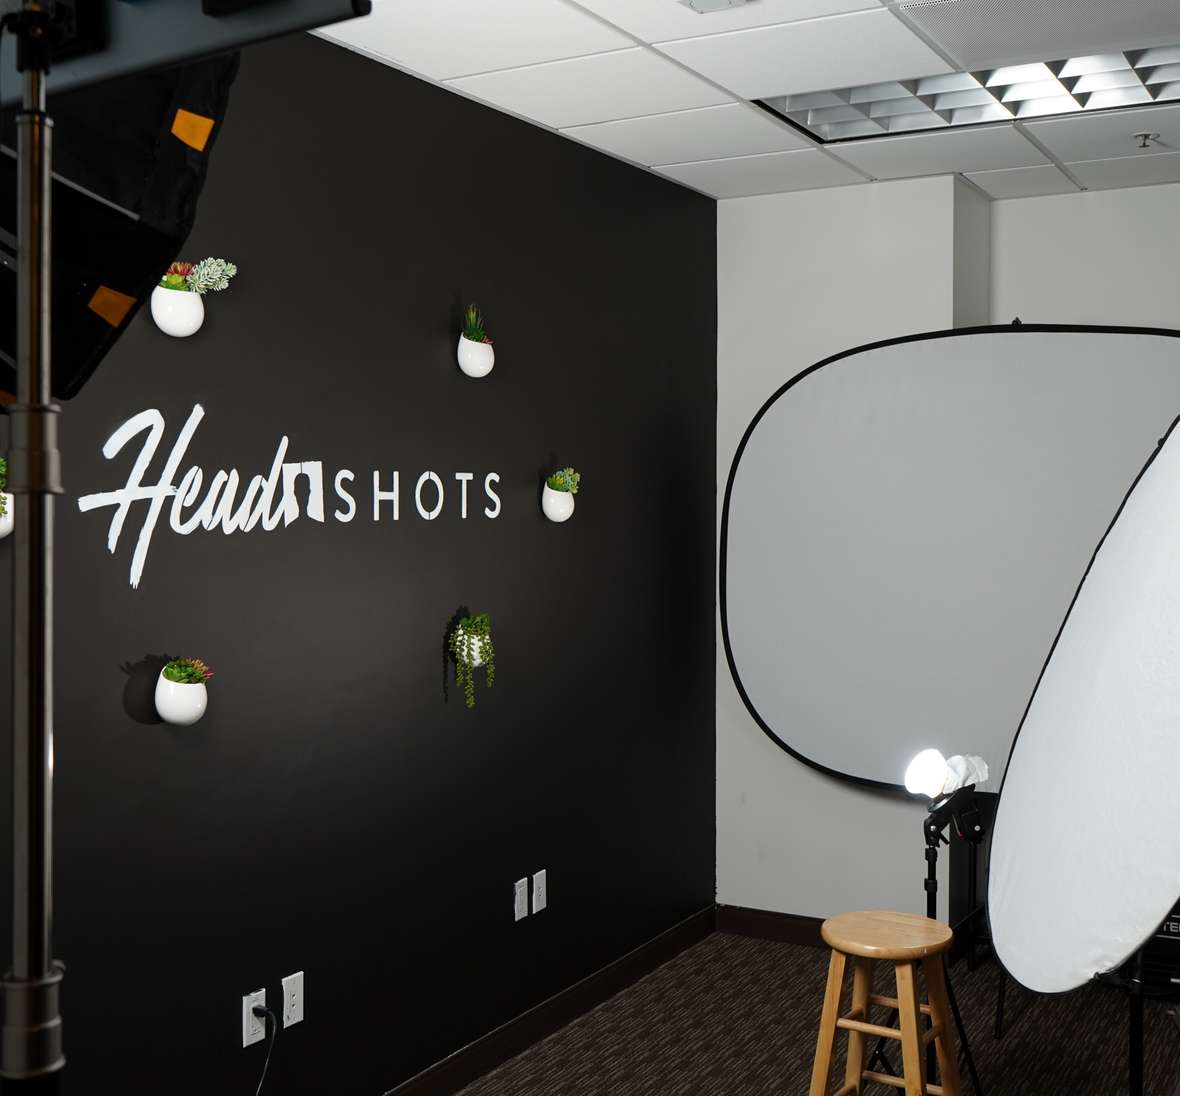 HeadShots Inc Photo